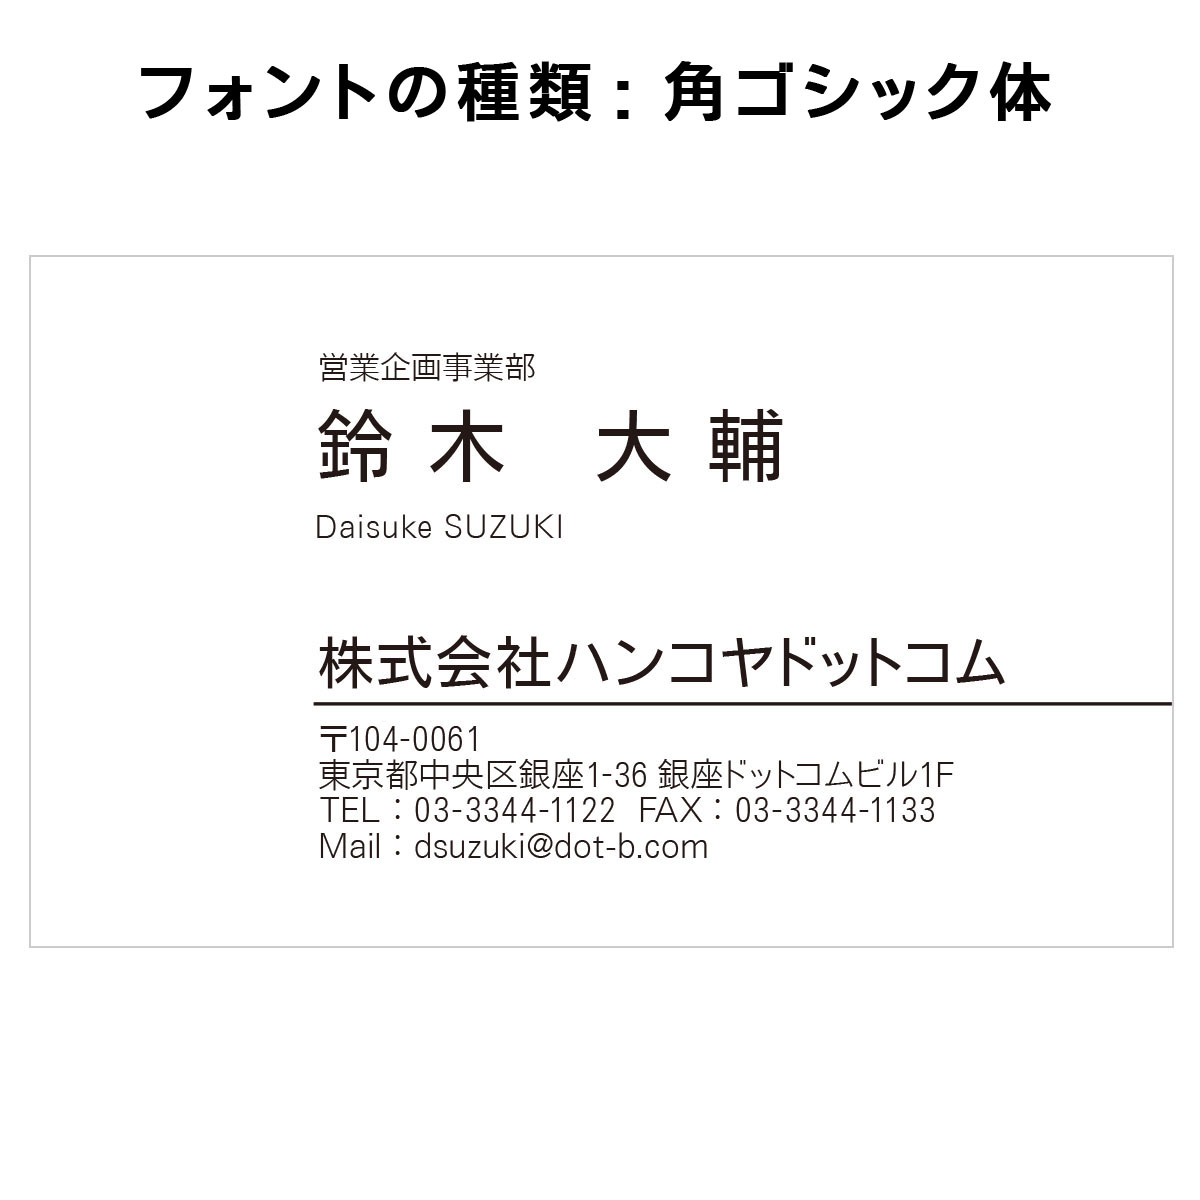 テキスト入稿名刺 ヨコ向き 両面モノクロ印刷 A4-01 英語表記